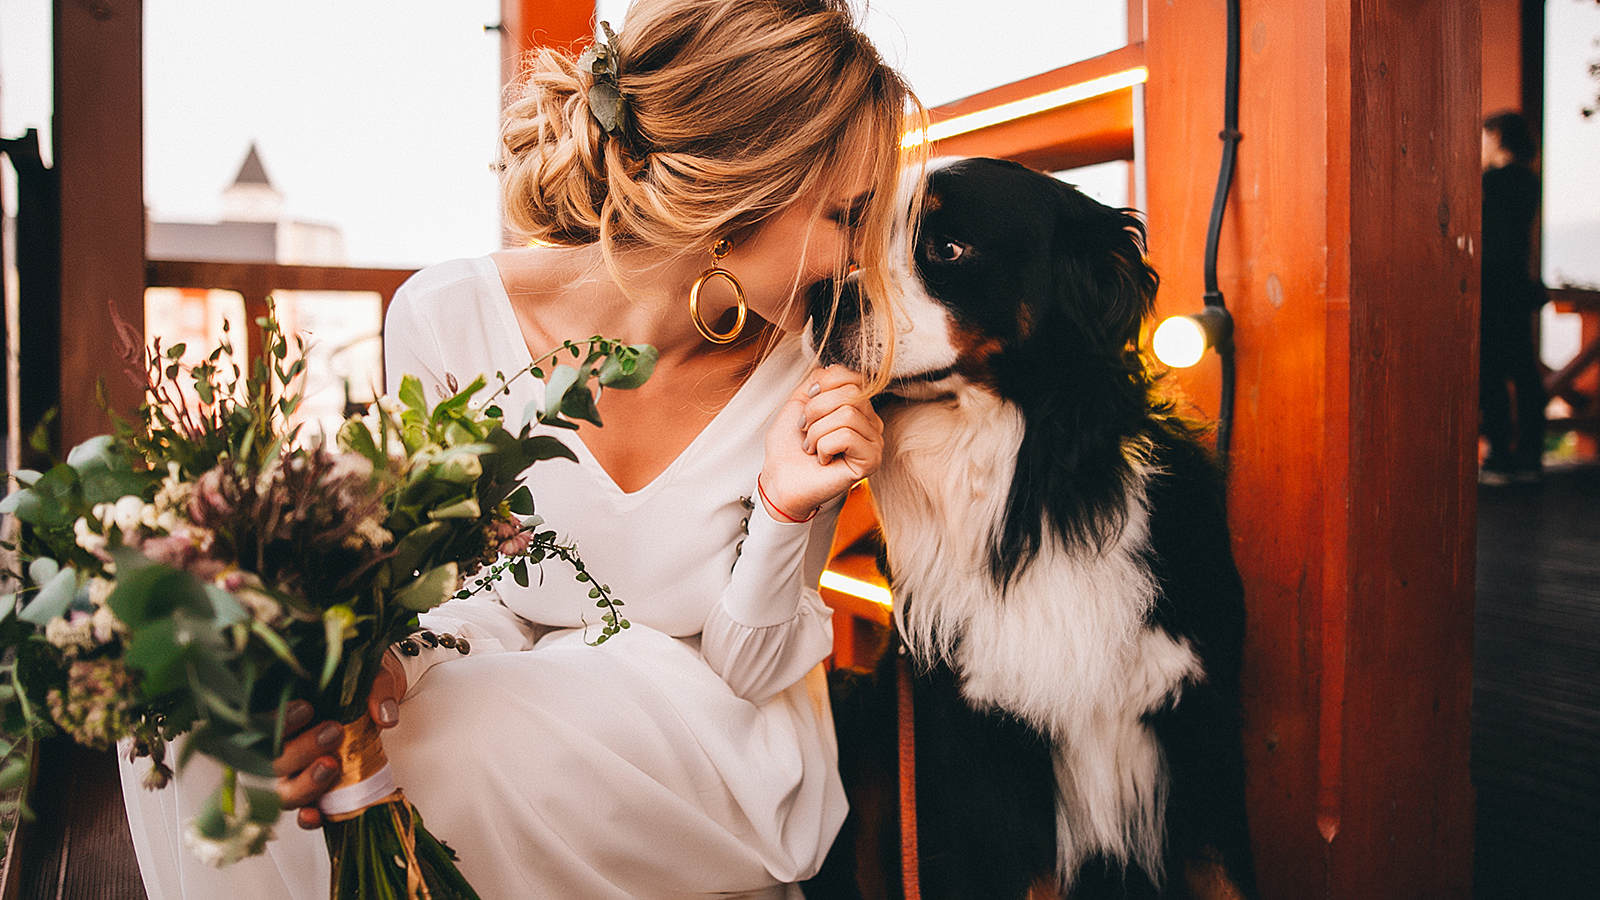 Bride on her wedding day and her favorite dog, Sennenhund Bernese